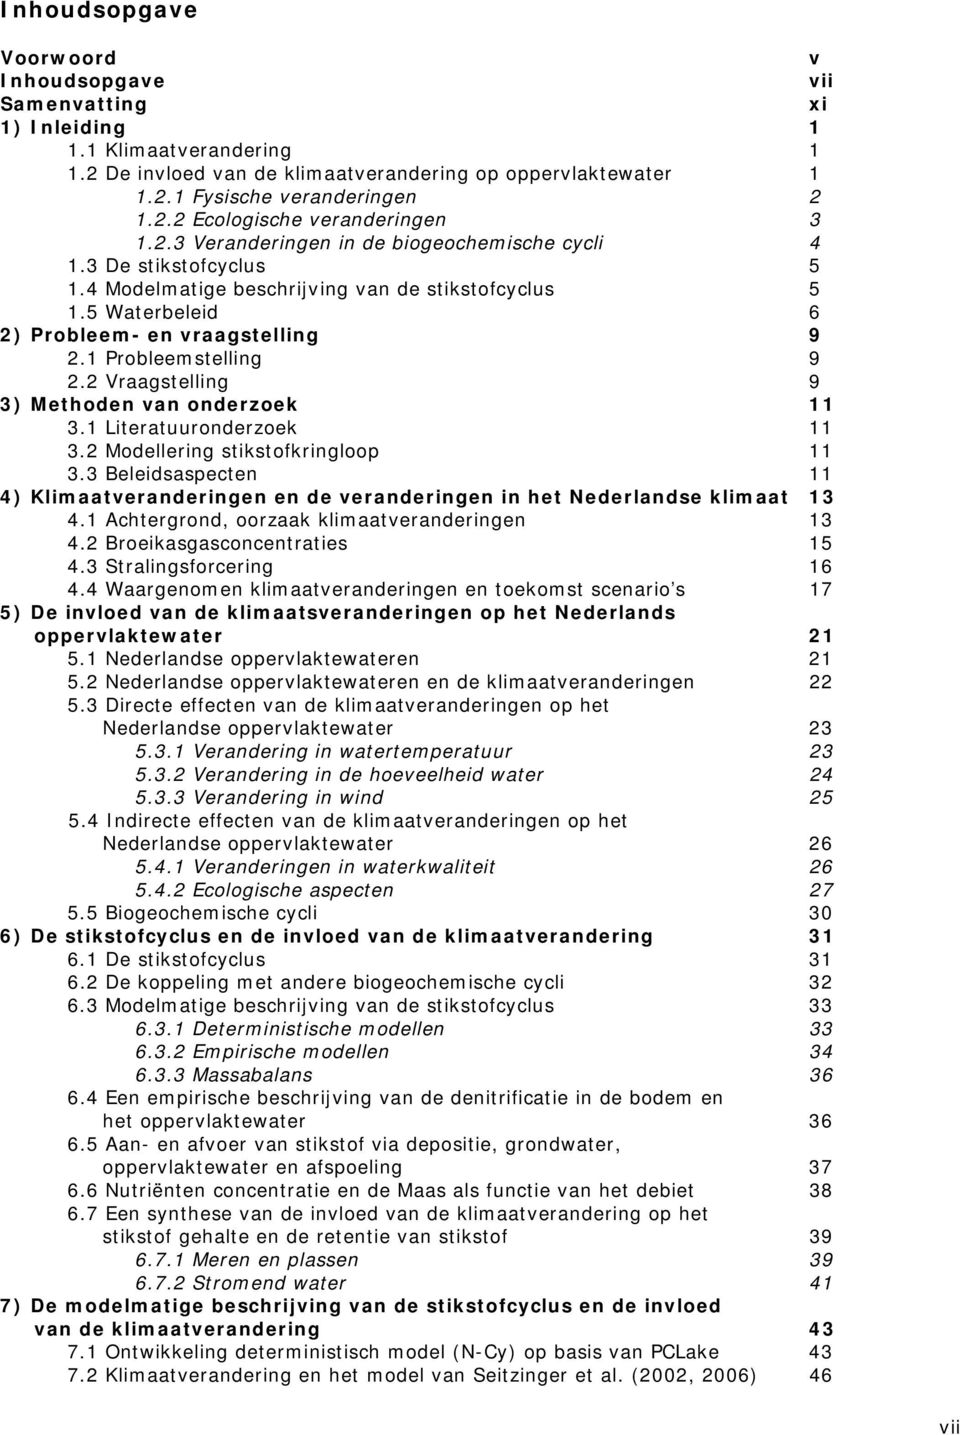 2 Vraagstelling 9 3) Methoden van onderzoek 11 3.1 Literatuuronderzoek 11 3.2 Modellering stikstofkringloop 11 3.